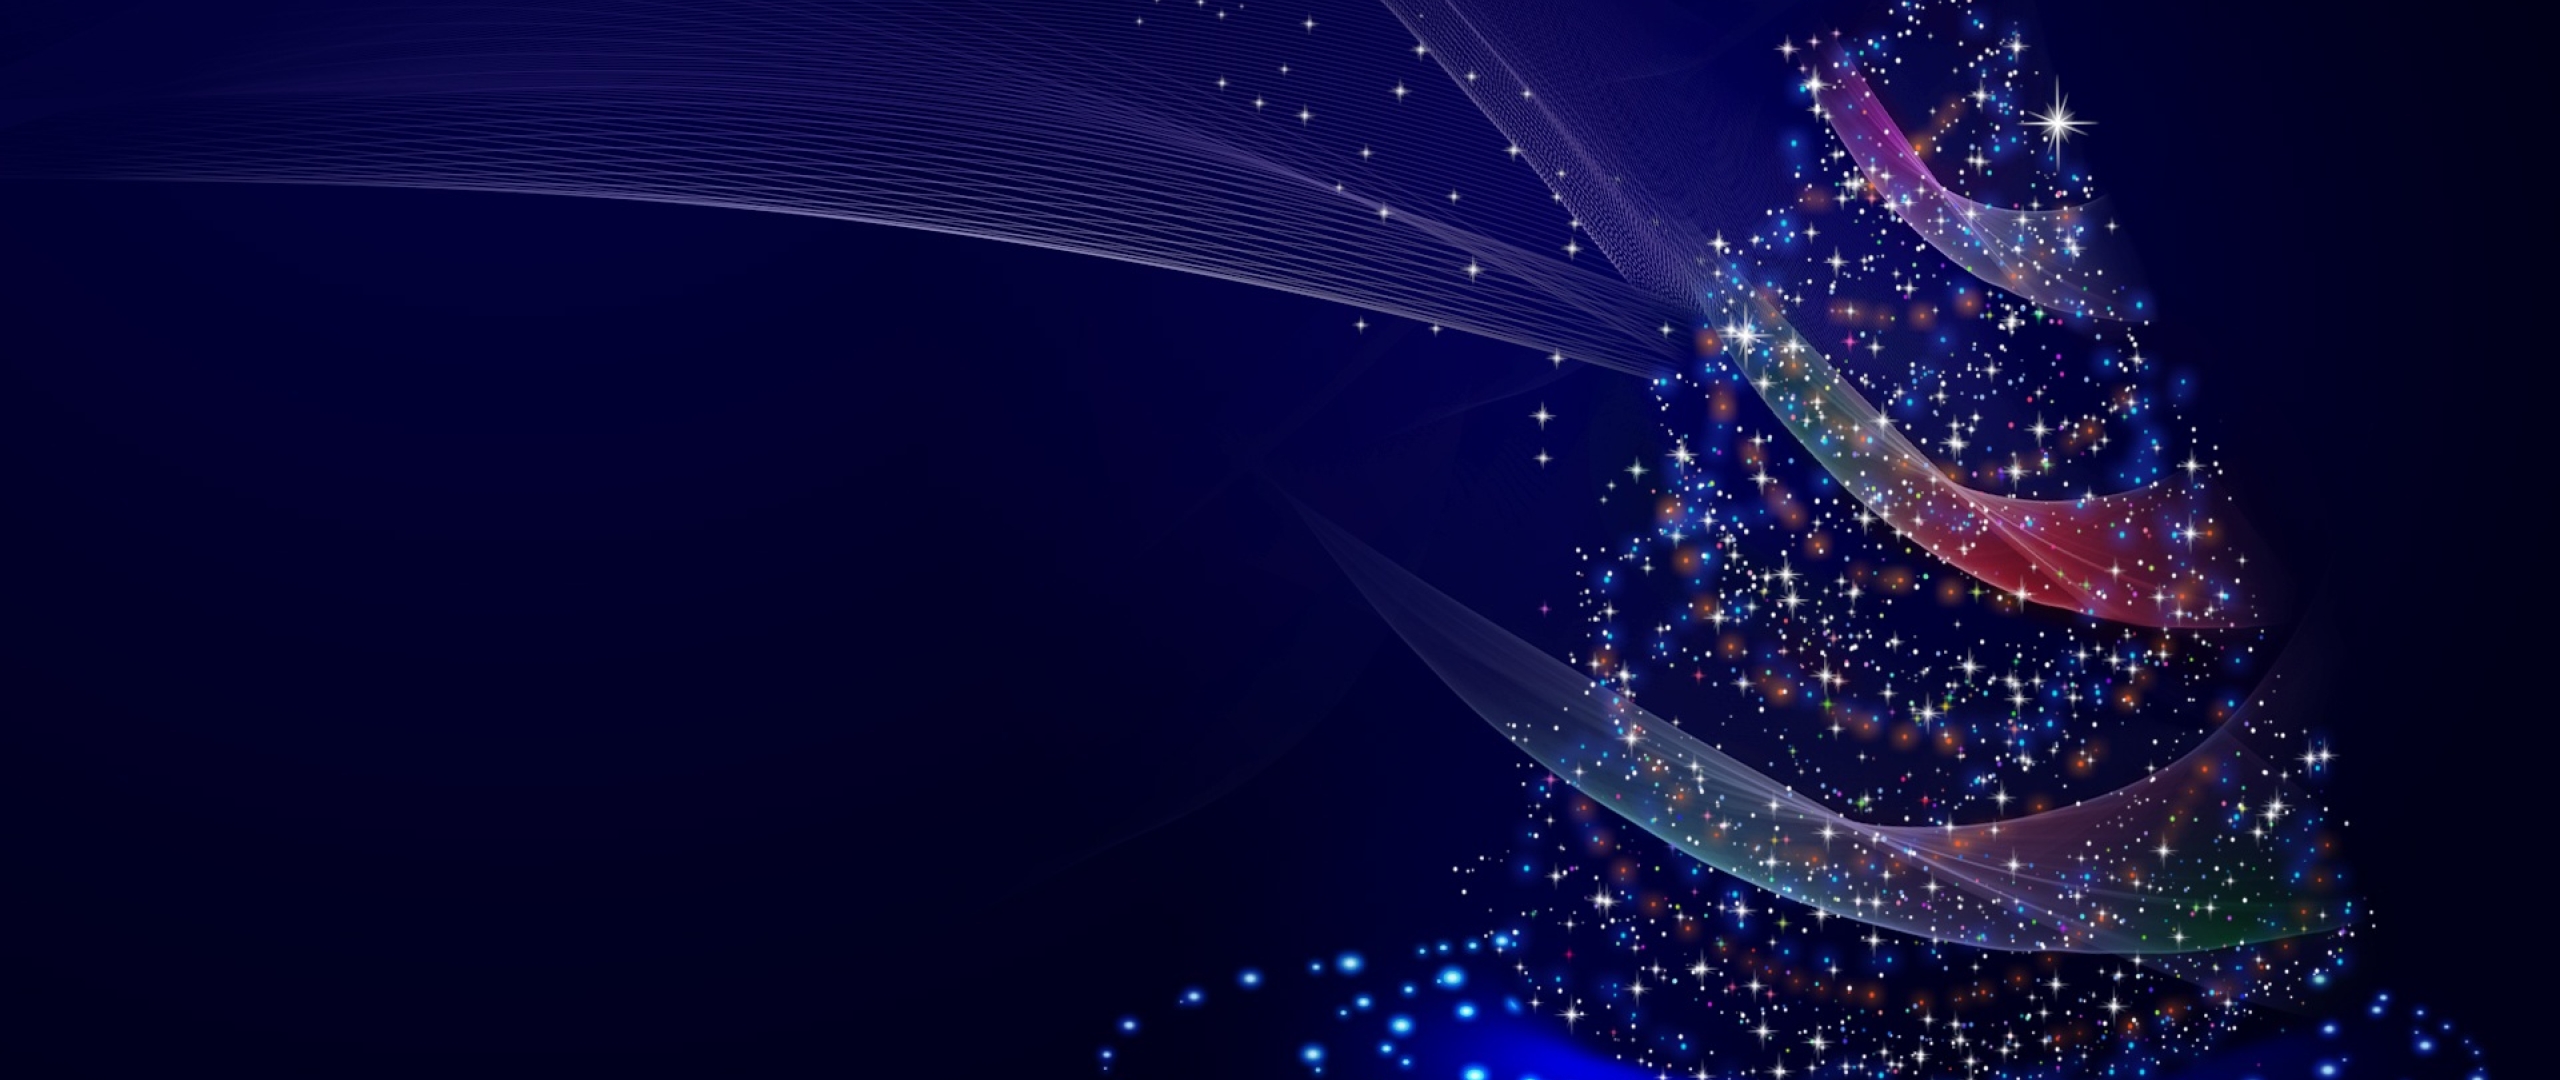 2560x1080 Artistic Blue Christmas Tree 2560x1080 ...